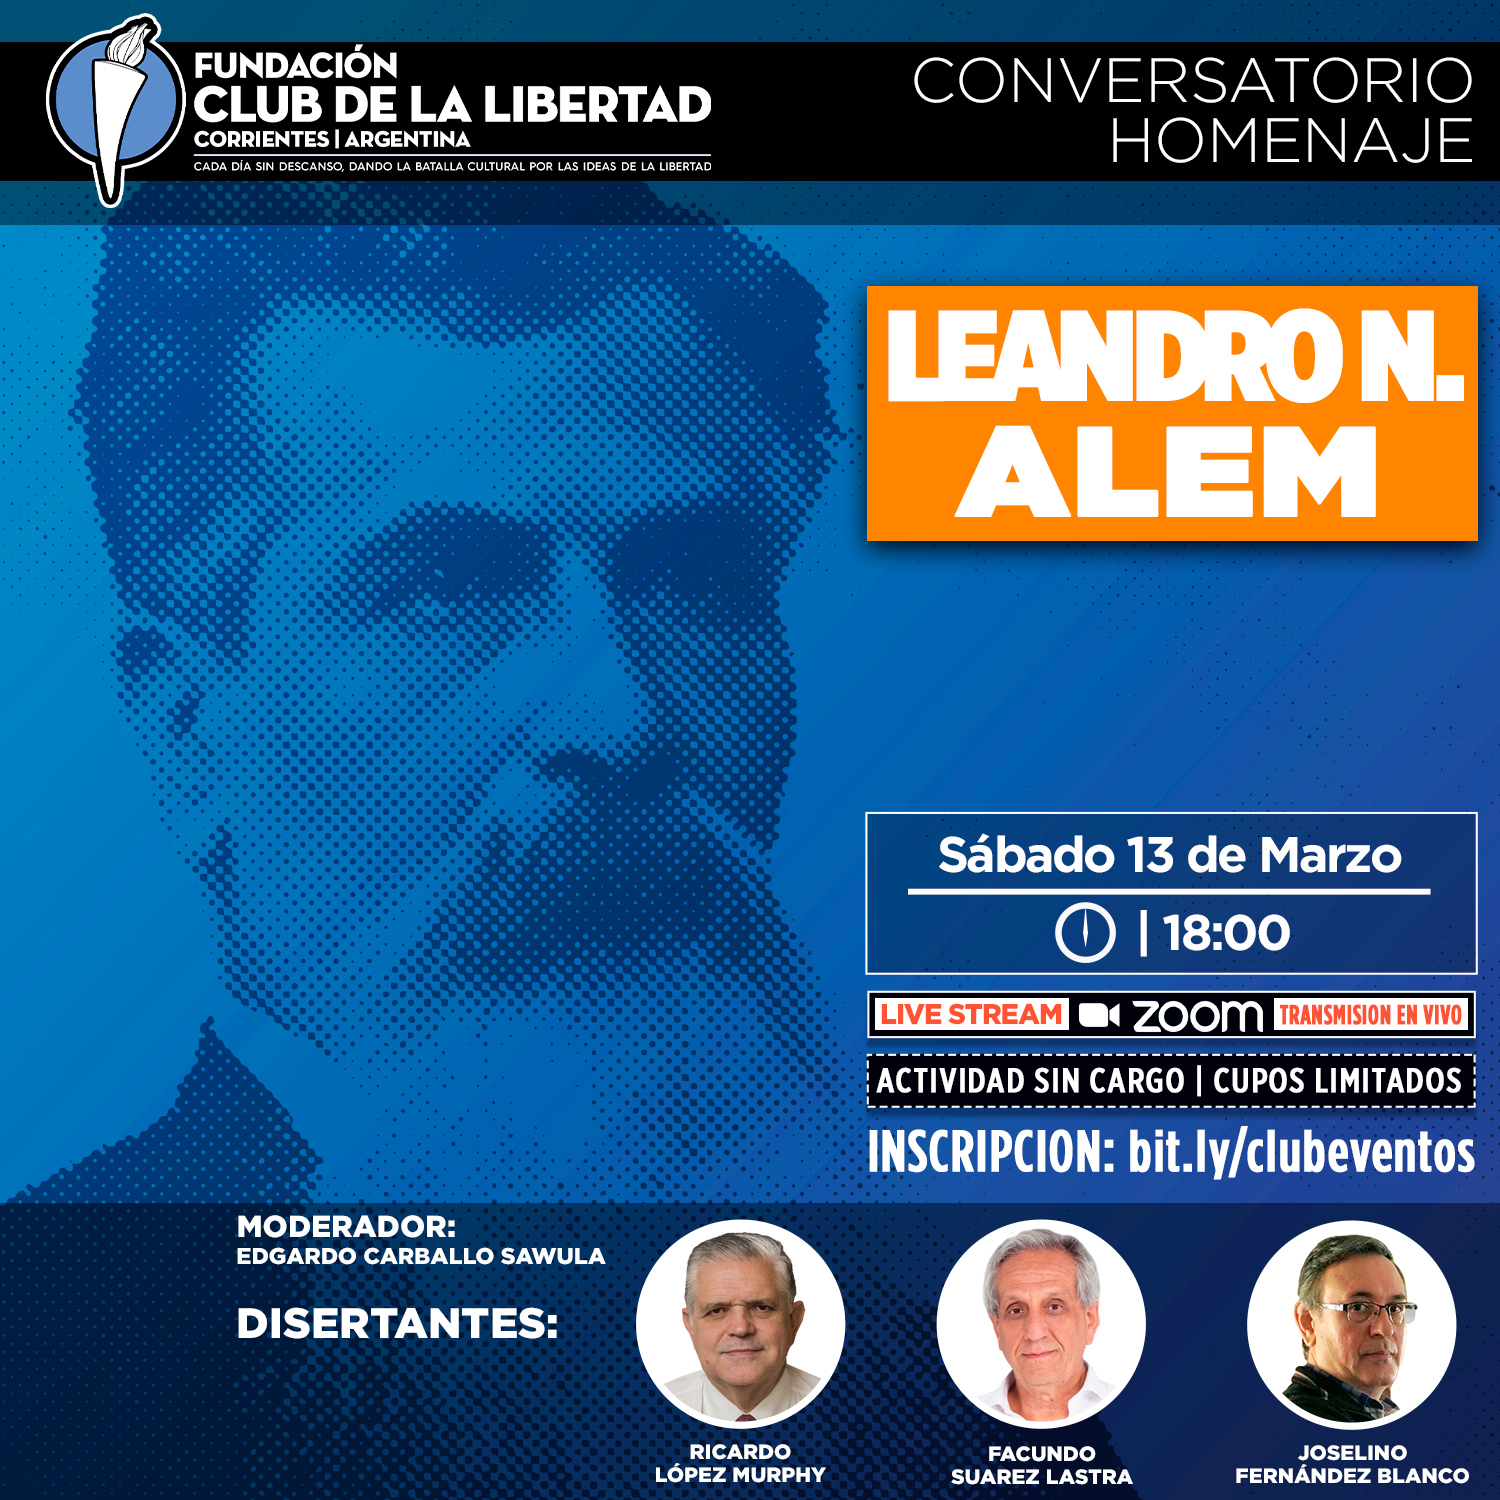 En este momento estás viendo Crónica del evento: «Conversatorio homenaje Leandro N. Alem»